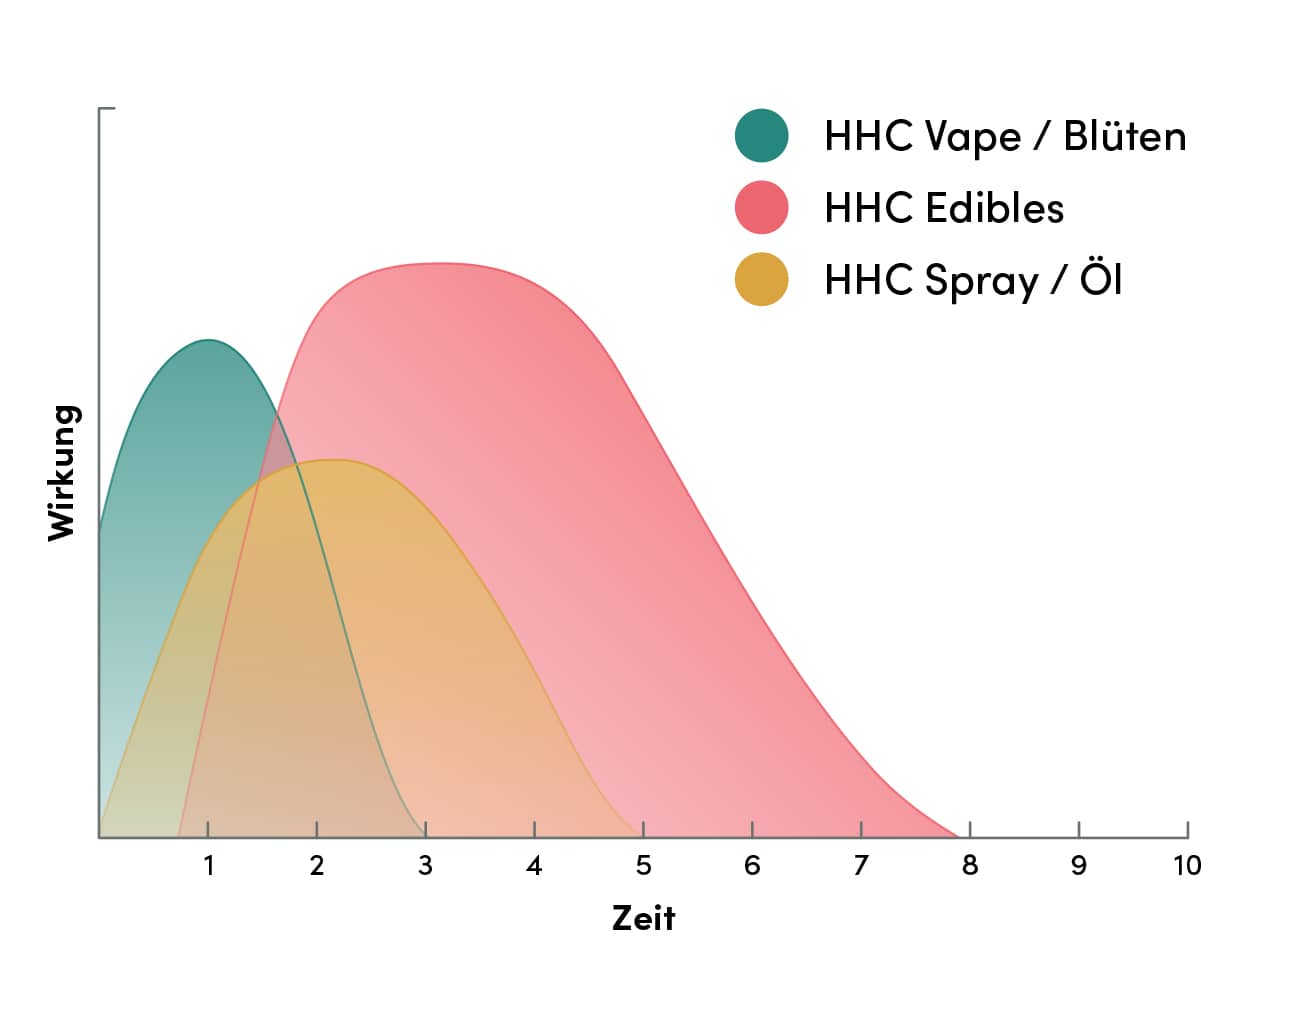 Grafik zur Veranschaulichung von HHC Wirkeintritt und HHC Wirkdauer. Die x-Achse zeigt die Zeit in Stunden, während die y-Achse die Intensität der Wirkung darstellt. Drei Kurven repräsentieren unterschiedliche HHC-Produkte: HHC Vape und Blüten, HHC Edibles sowie HHC Spray und HHC Öl. Die Kurven illustrieren den unterschiedlichen Beginn und die Dauer der HHC Wirkung für jedes Produkt, mit variierenden Anstiegen und Abflachungen, die aufzeigen, wie schnell und wie lange die Effekte anhalten.